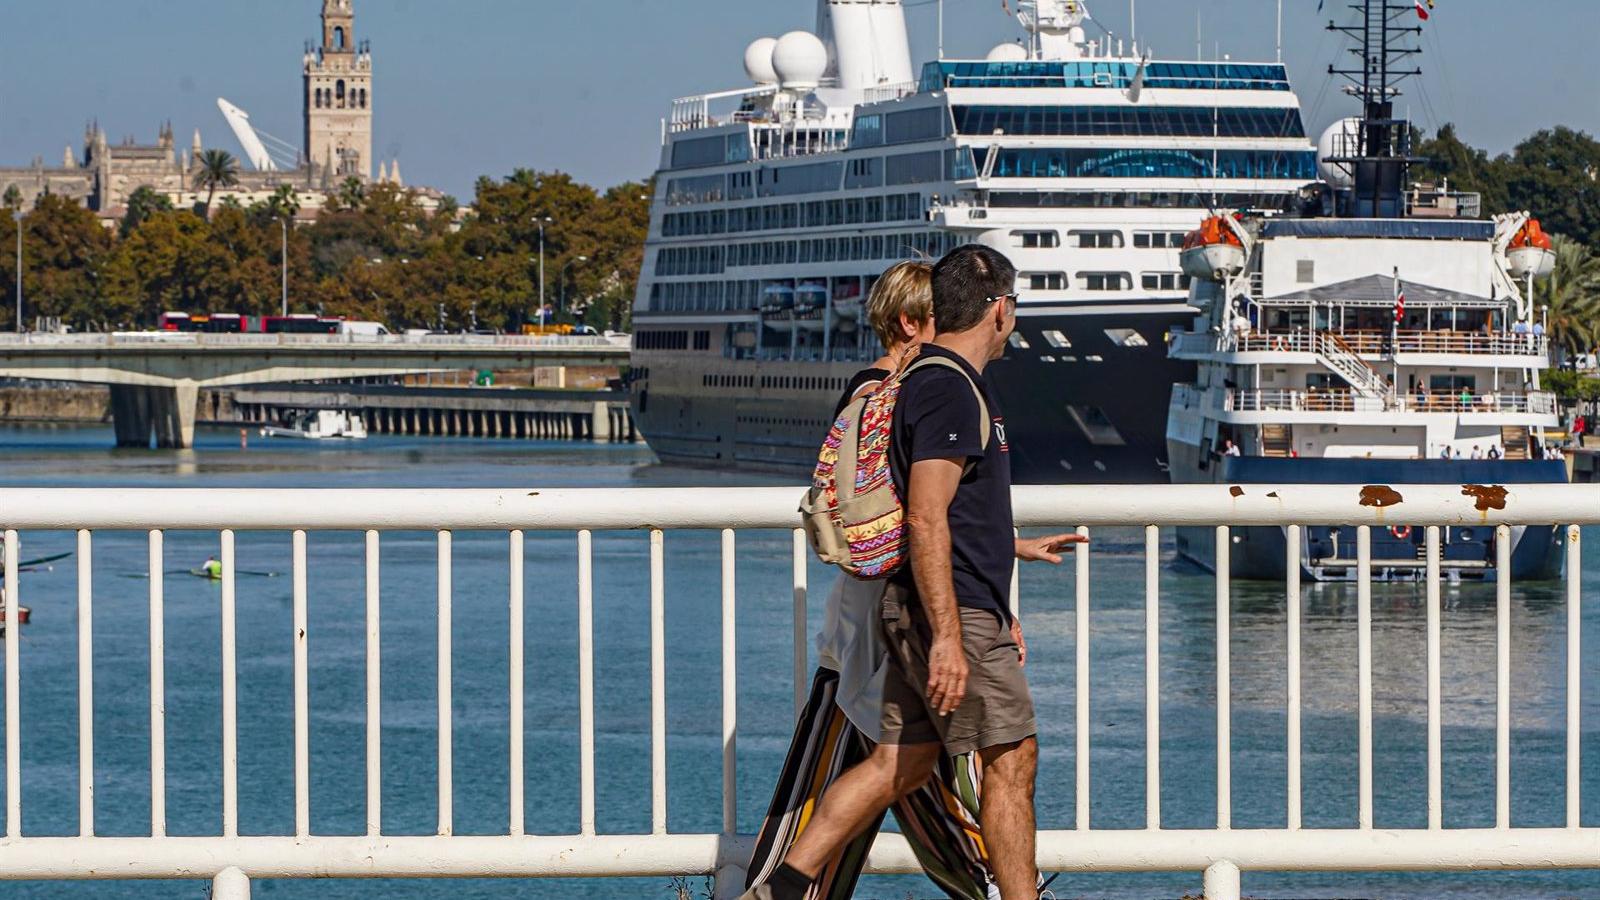 Las empresas turísticas lideran las caídas del Ibex 35 ante el auge de contagios y restricciones en Europa